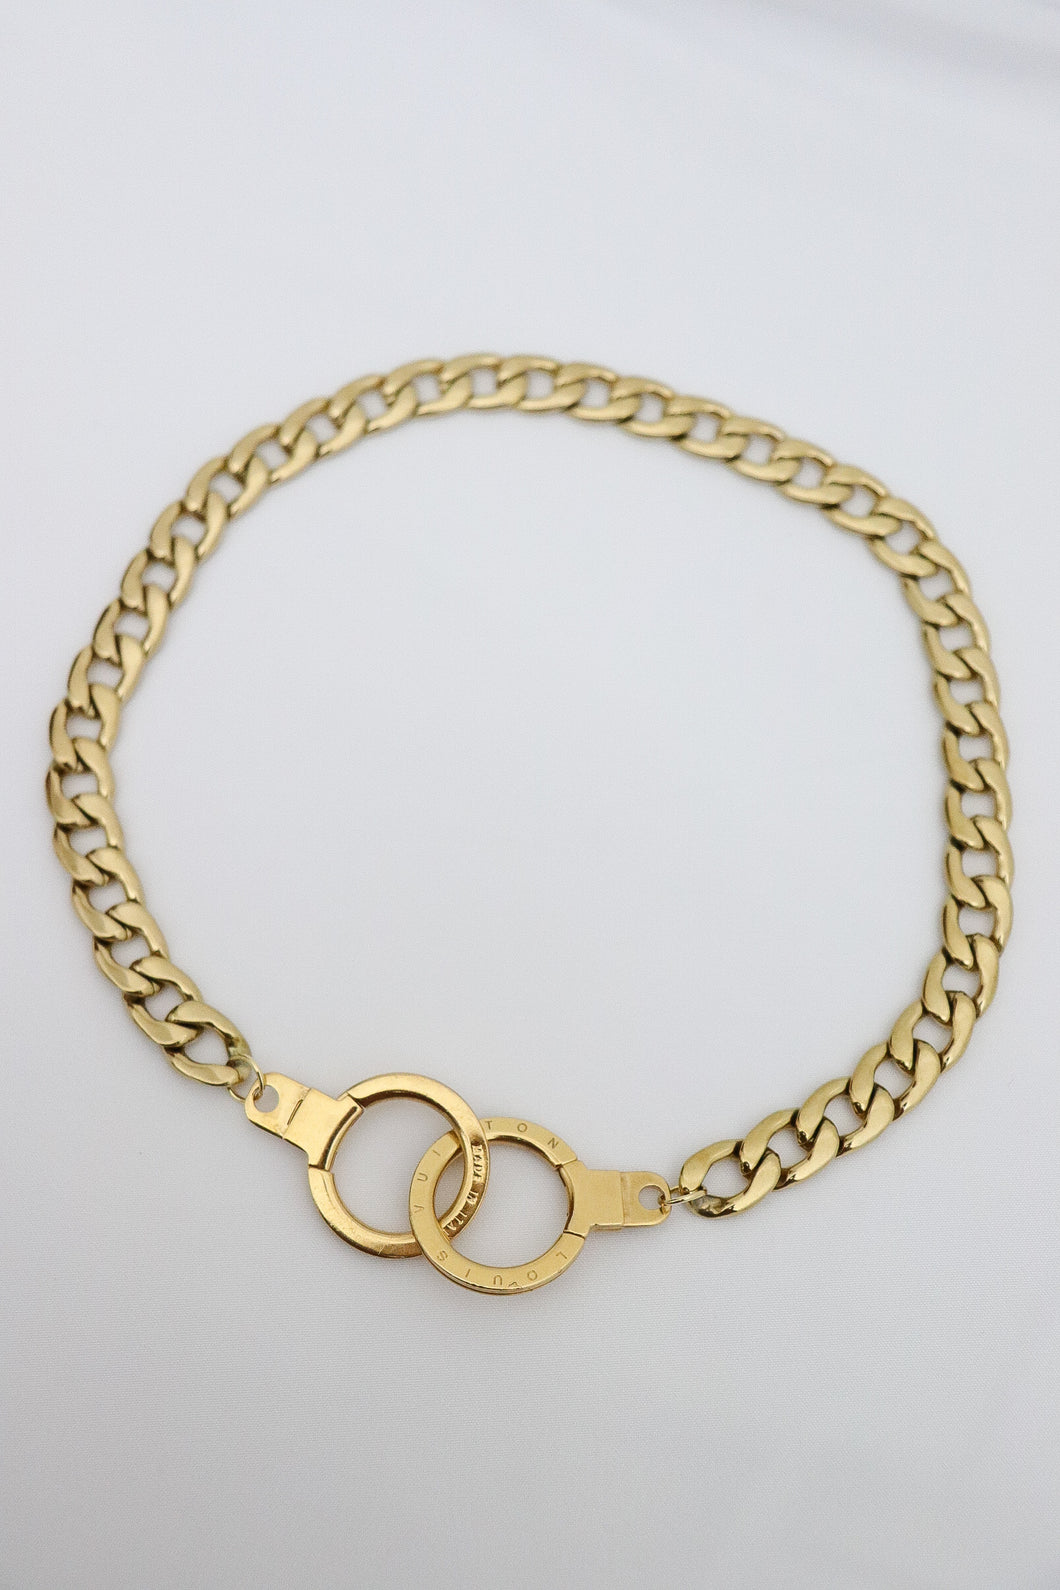 Louis Vuitton clasp necklace